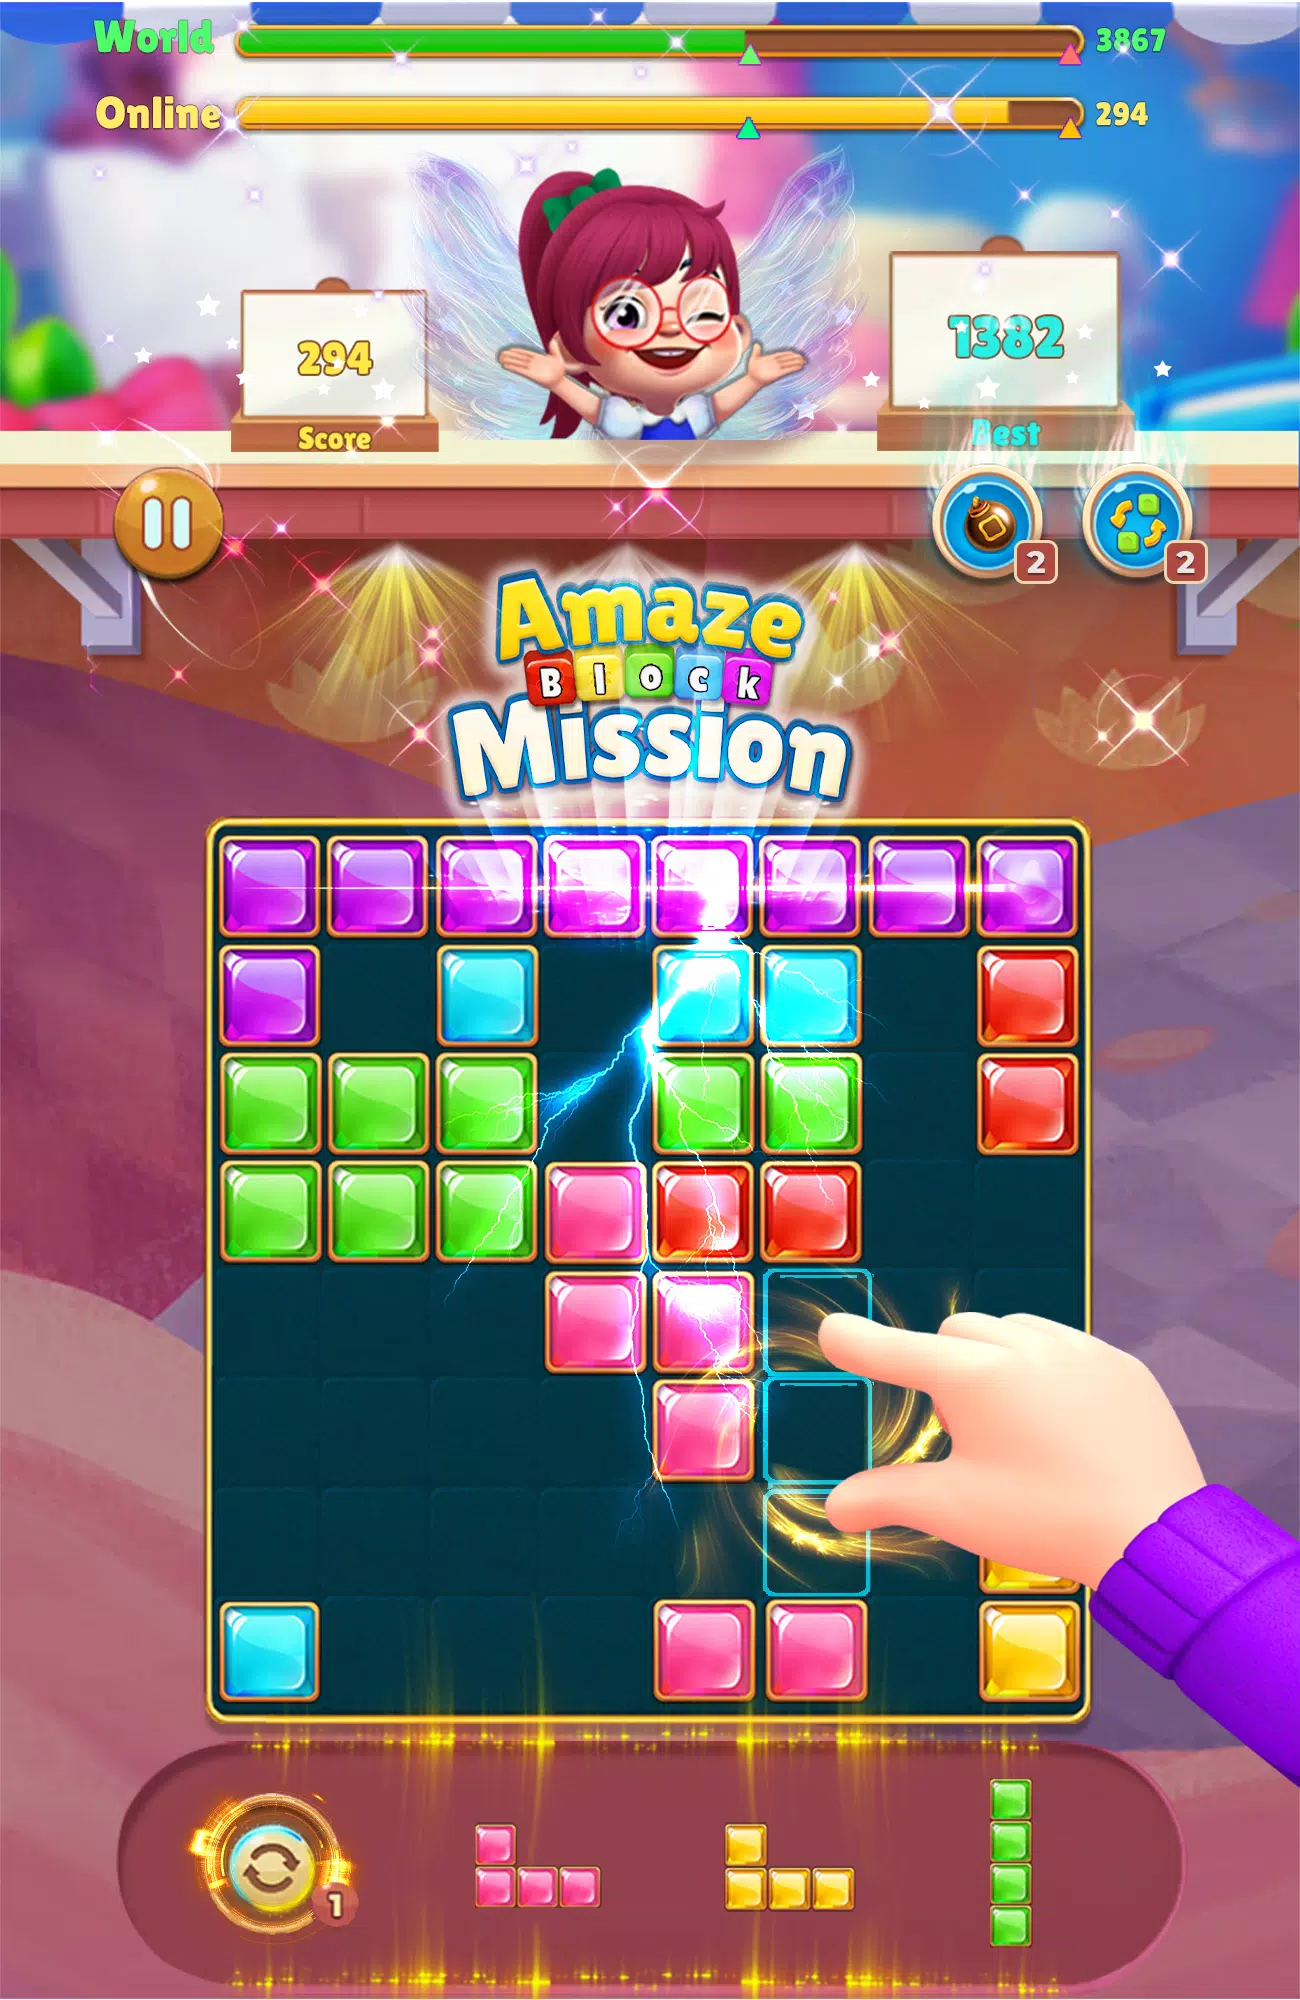 Juegos de rompecabezas de bloques - Misión 1010 for Android - APK Download